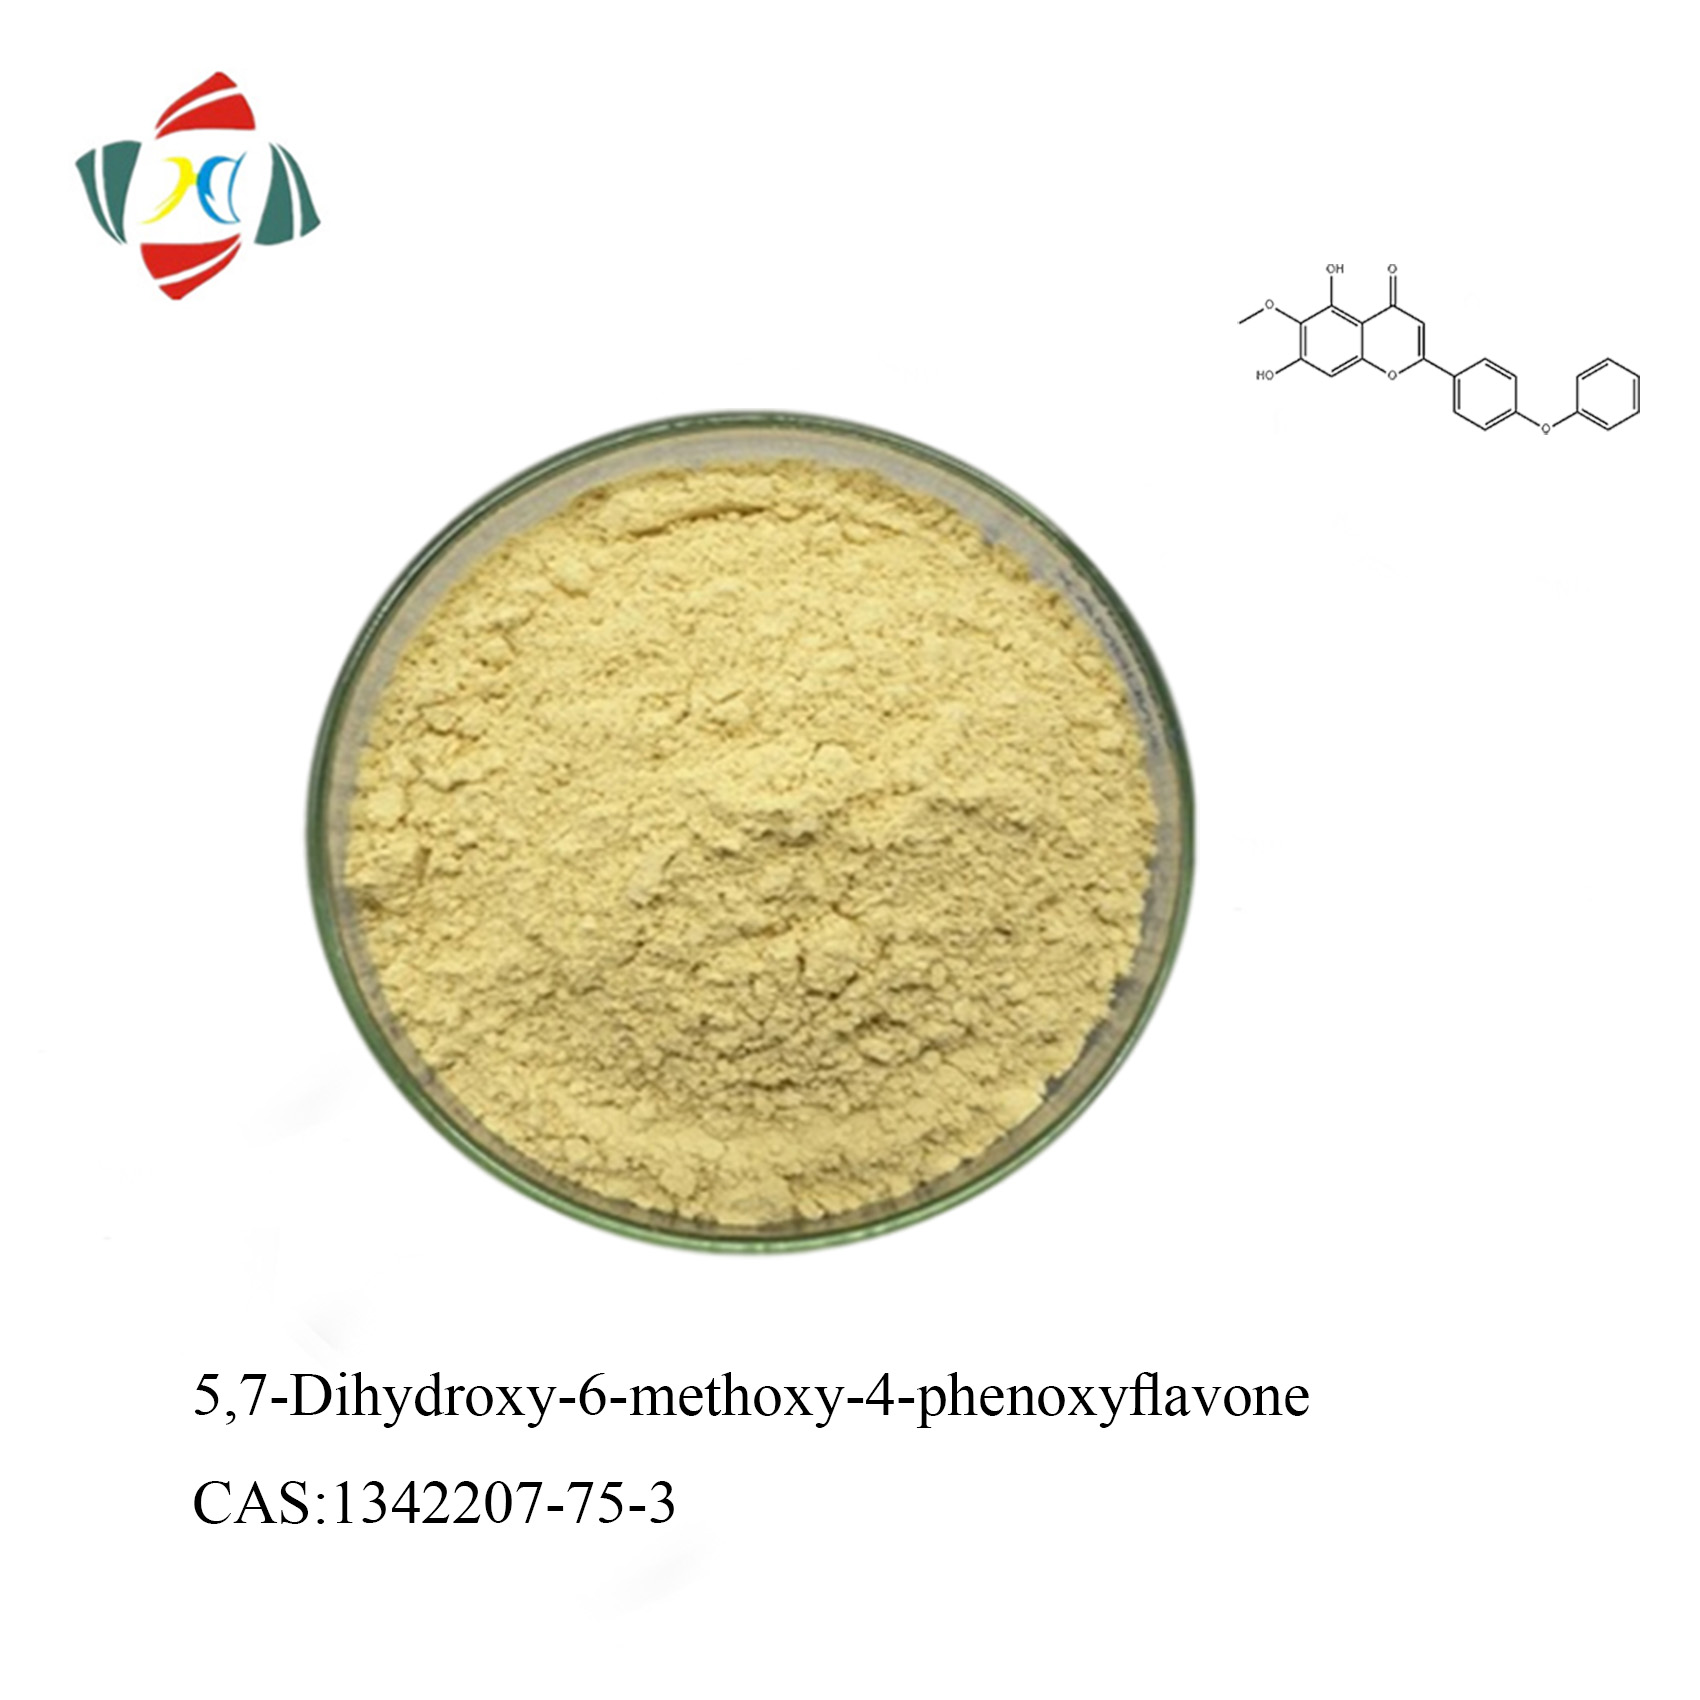 Kaufen 5,7-Dihydroxy-6-methoxy-4-phenoxyflavon CAS 1342207-75-3;5,7-Dihydroxy-6-methoxy-4-phenoxyflavon CAS 1342207-75-3 Preis;5,7-Dihydroxy-6-methoxy-4-phenoxyflavon CAS 1342207-75-3 Marken;5,7-Dihydroxy-6-methoxy-4-phenoxyflavon CAS 1342207-75-3 Hersteller;5,7-Dihydroxy-6-methoxy-4-phenoxyflavon CAS 1342207-75-3 Zitat;5,7-Dihydroxy-6-methoxy-4-phenoxyflavon CAS 1342207-75-3 Unternehmen